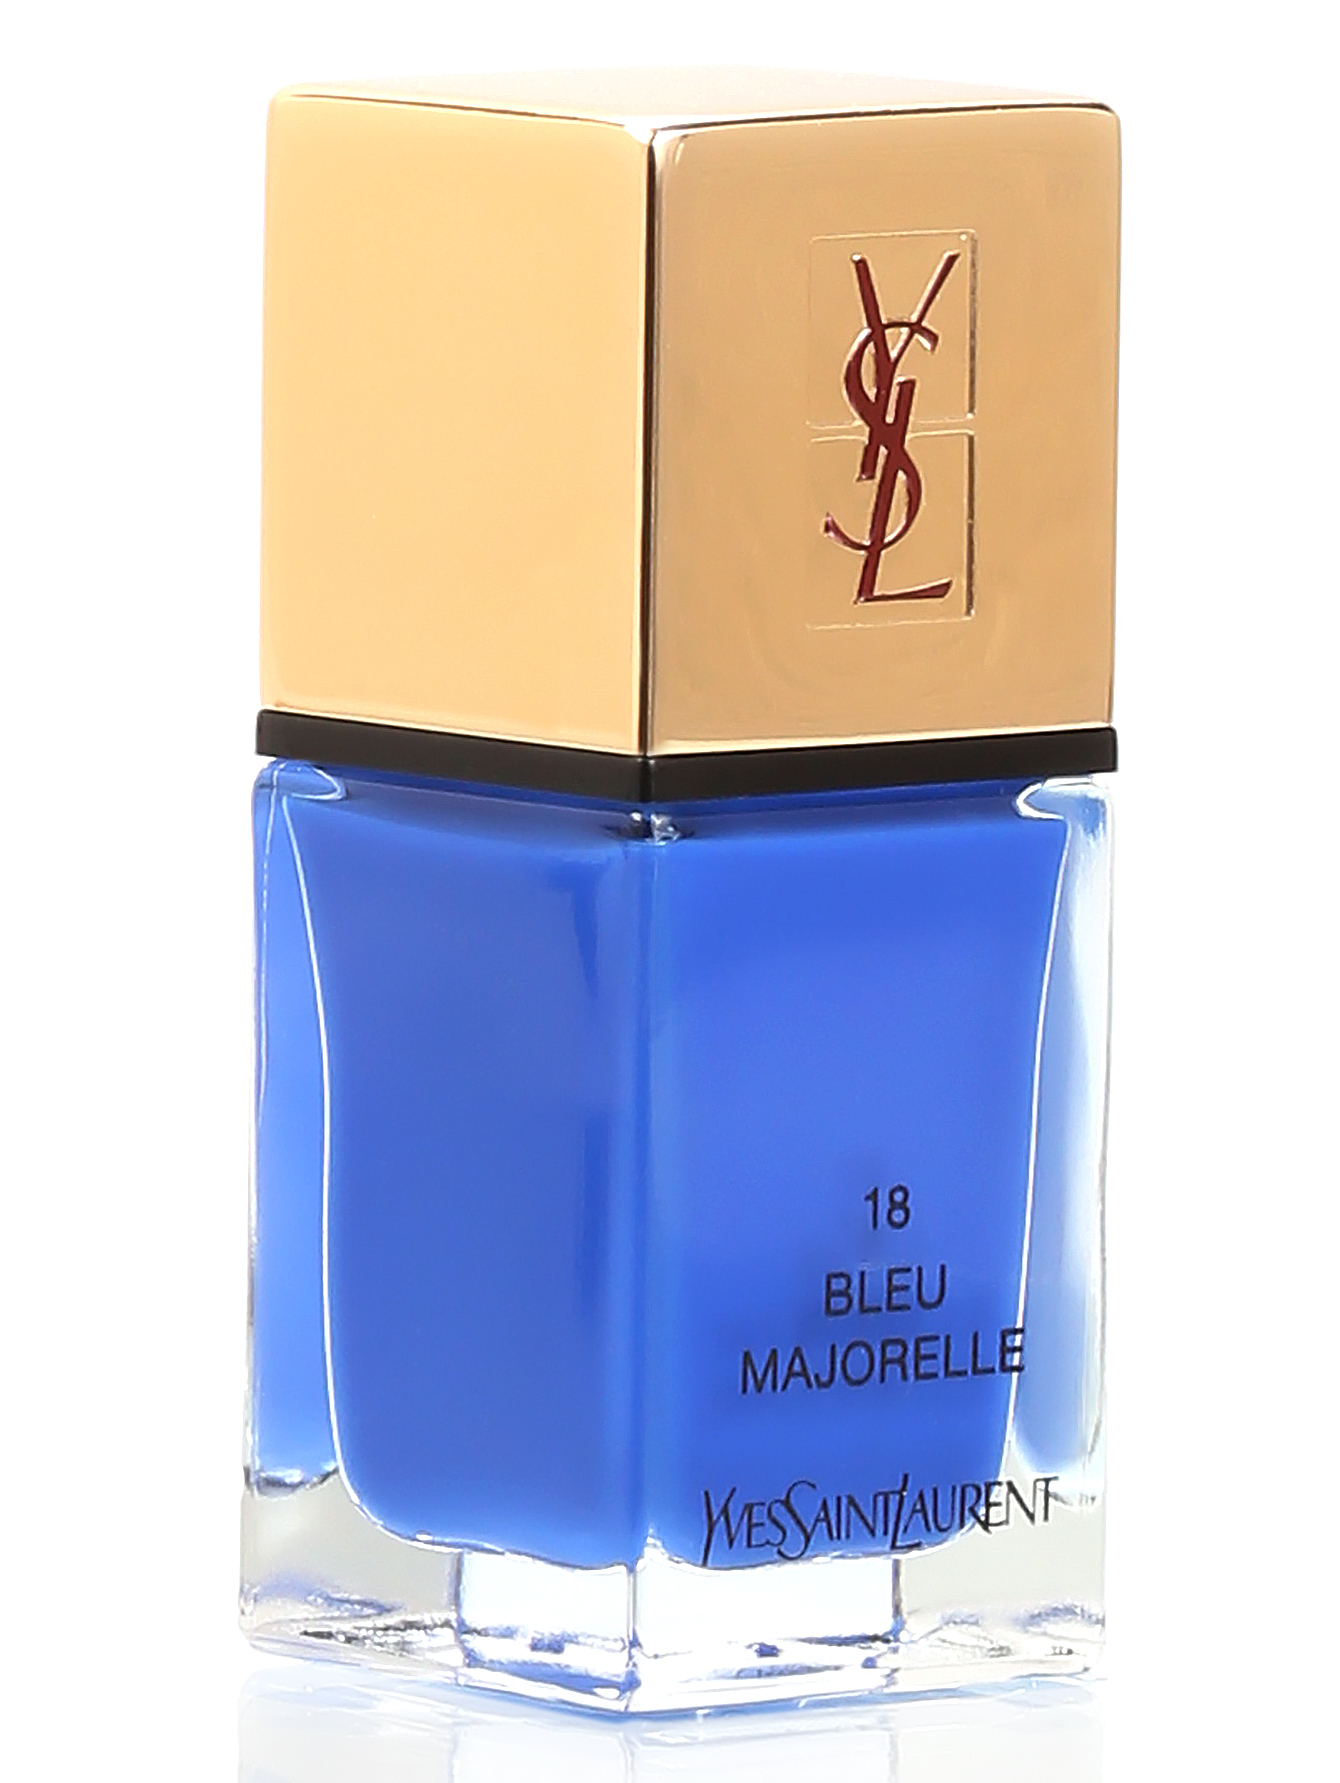 Лак для ногтей - №18 Blue majorelle, La Laque Couture, 10ml - Общий вид